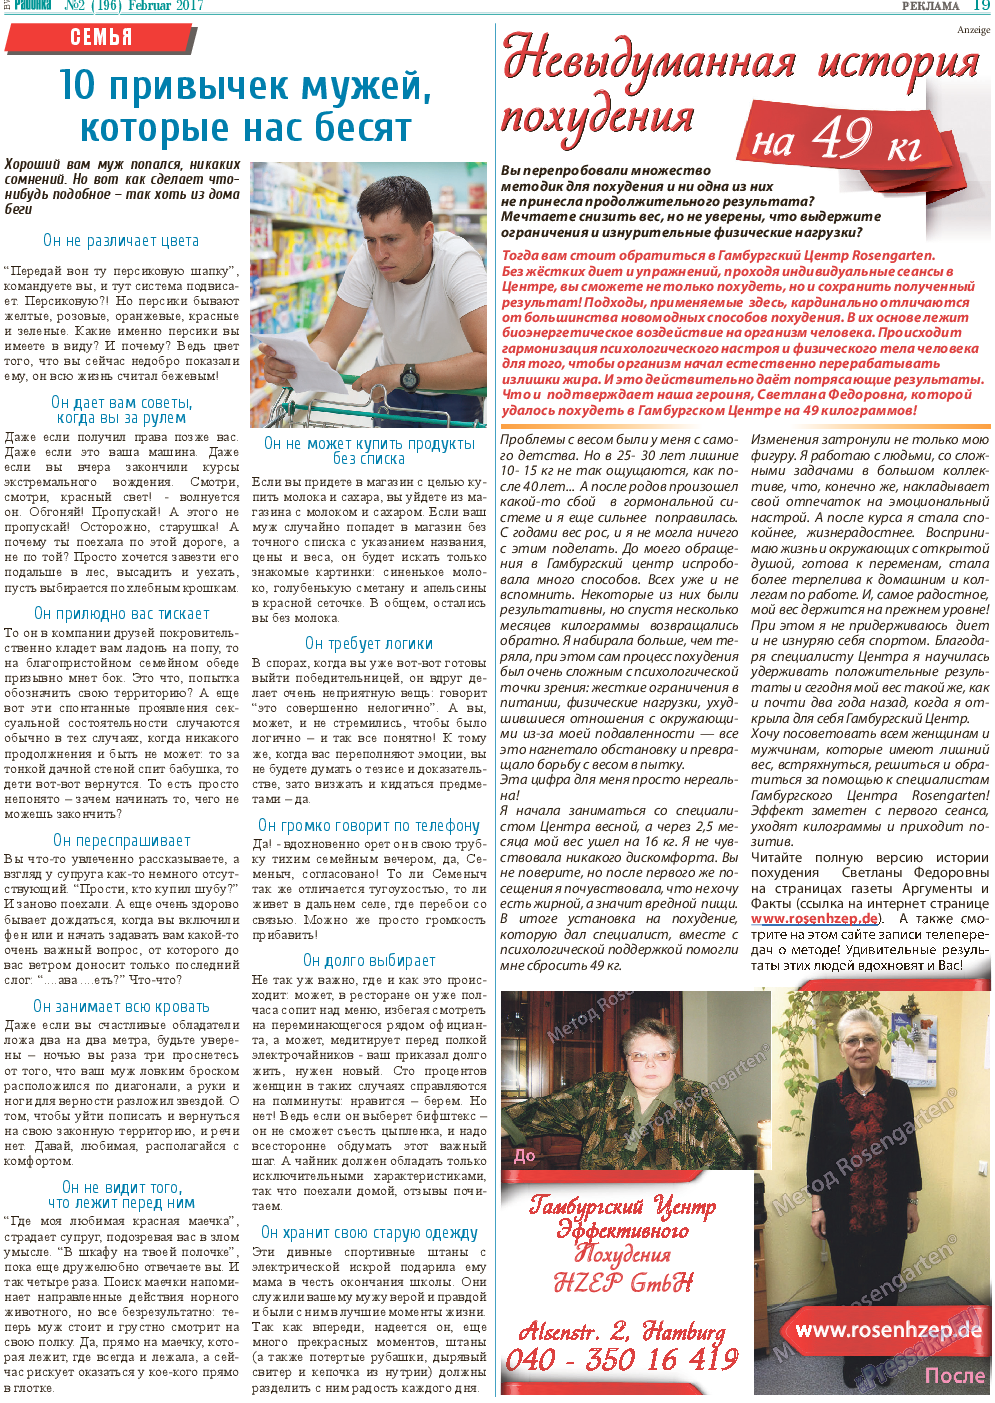 Районка-Süd-West, газета. 2017 №2 стр.19